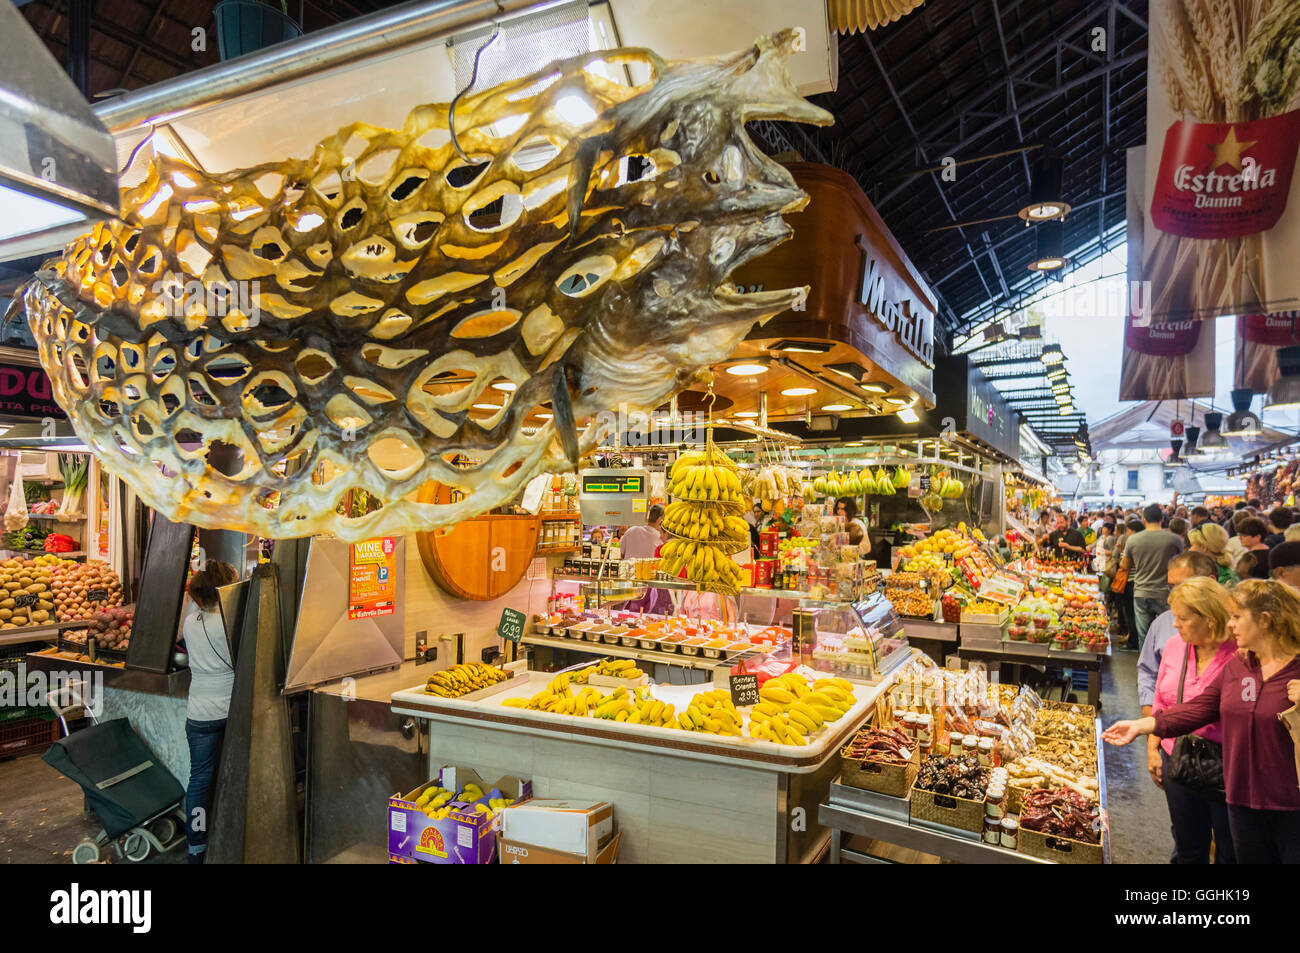 La Boqueria Markt, Obst und Gemüse und Meeresfrüchte, Barcelona, Katalonien, Spanien Stockfoto